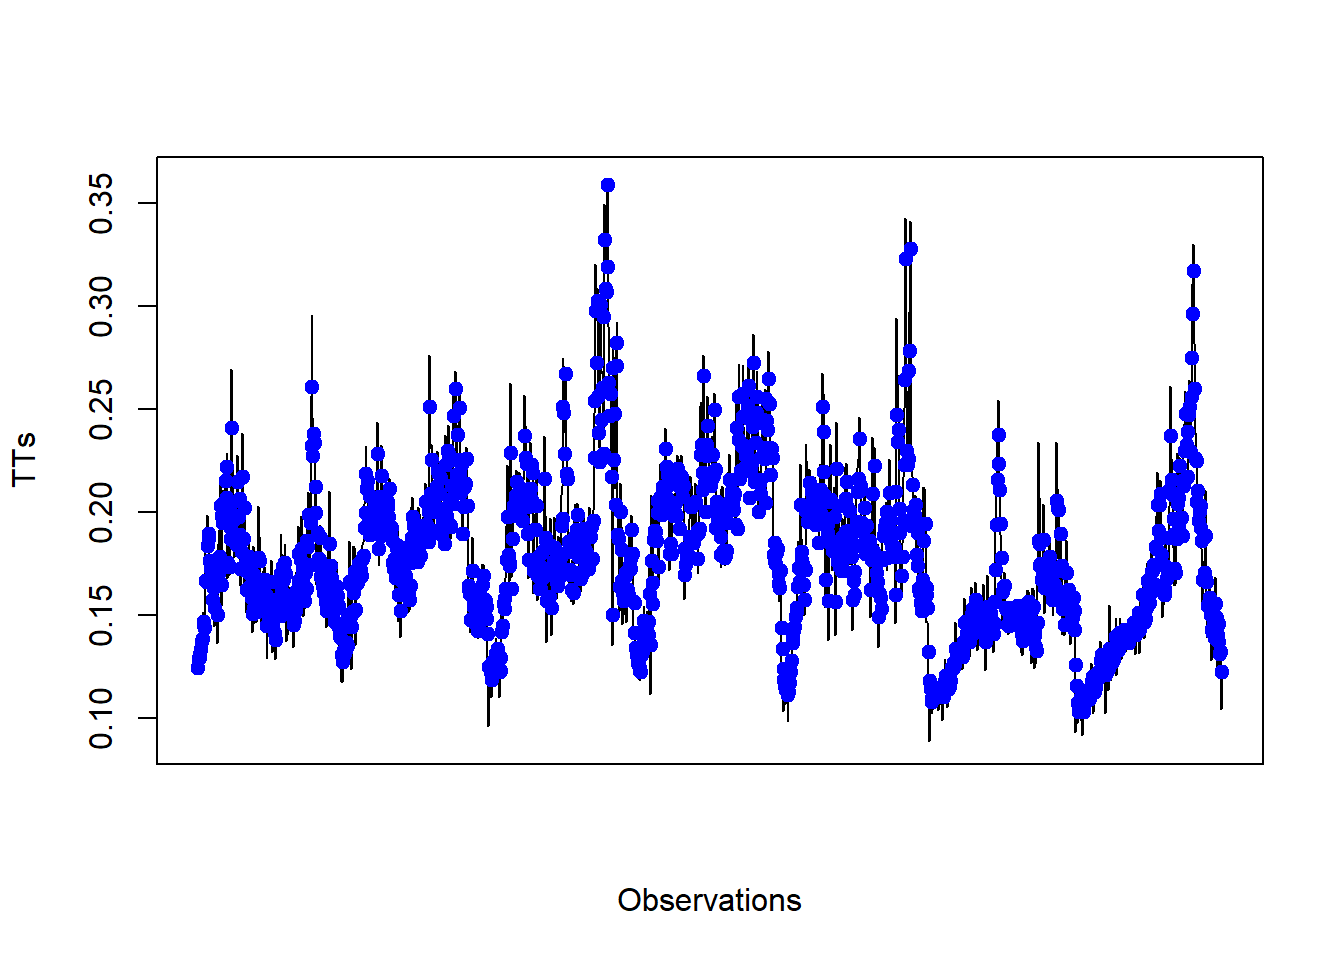 Observed vs predicted TT using an SVR model